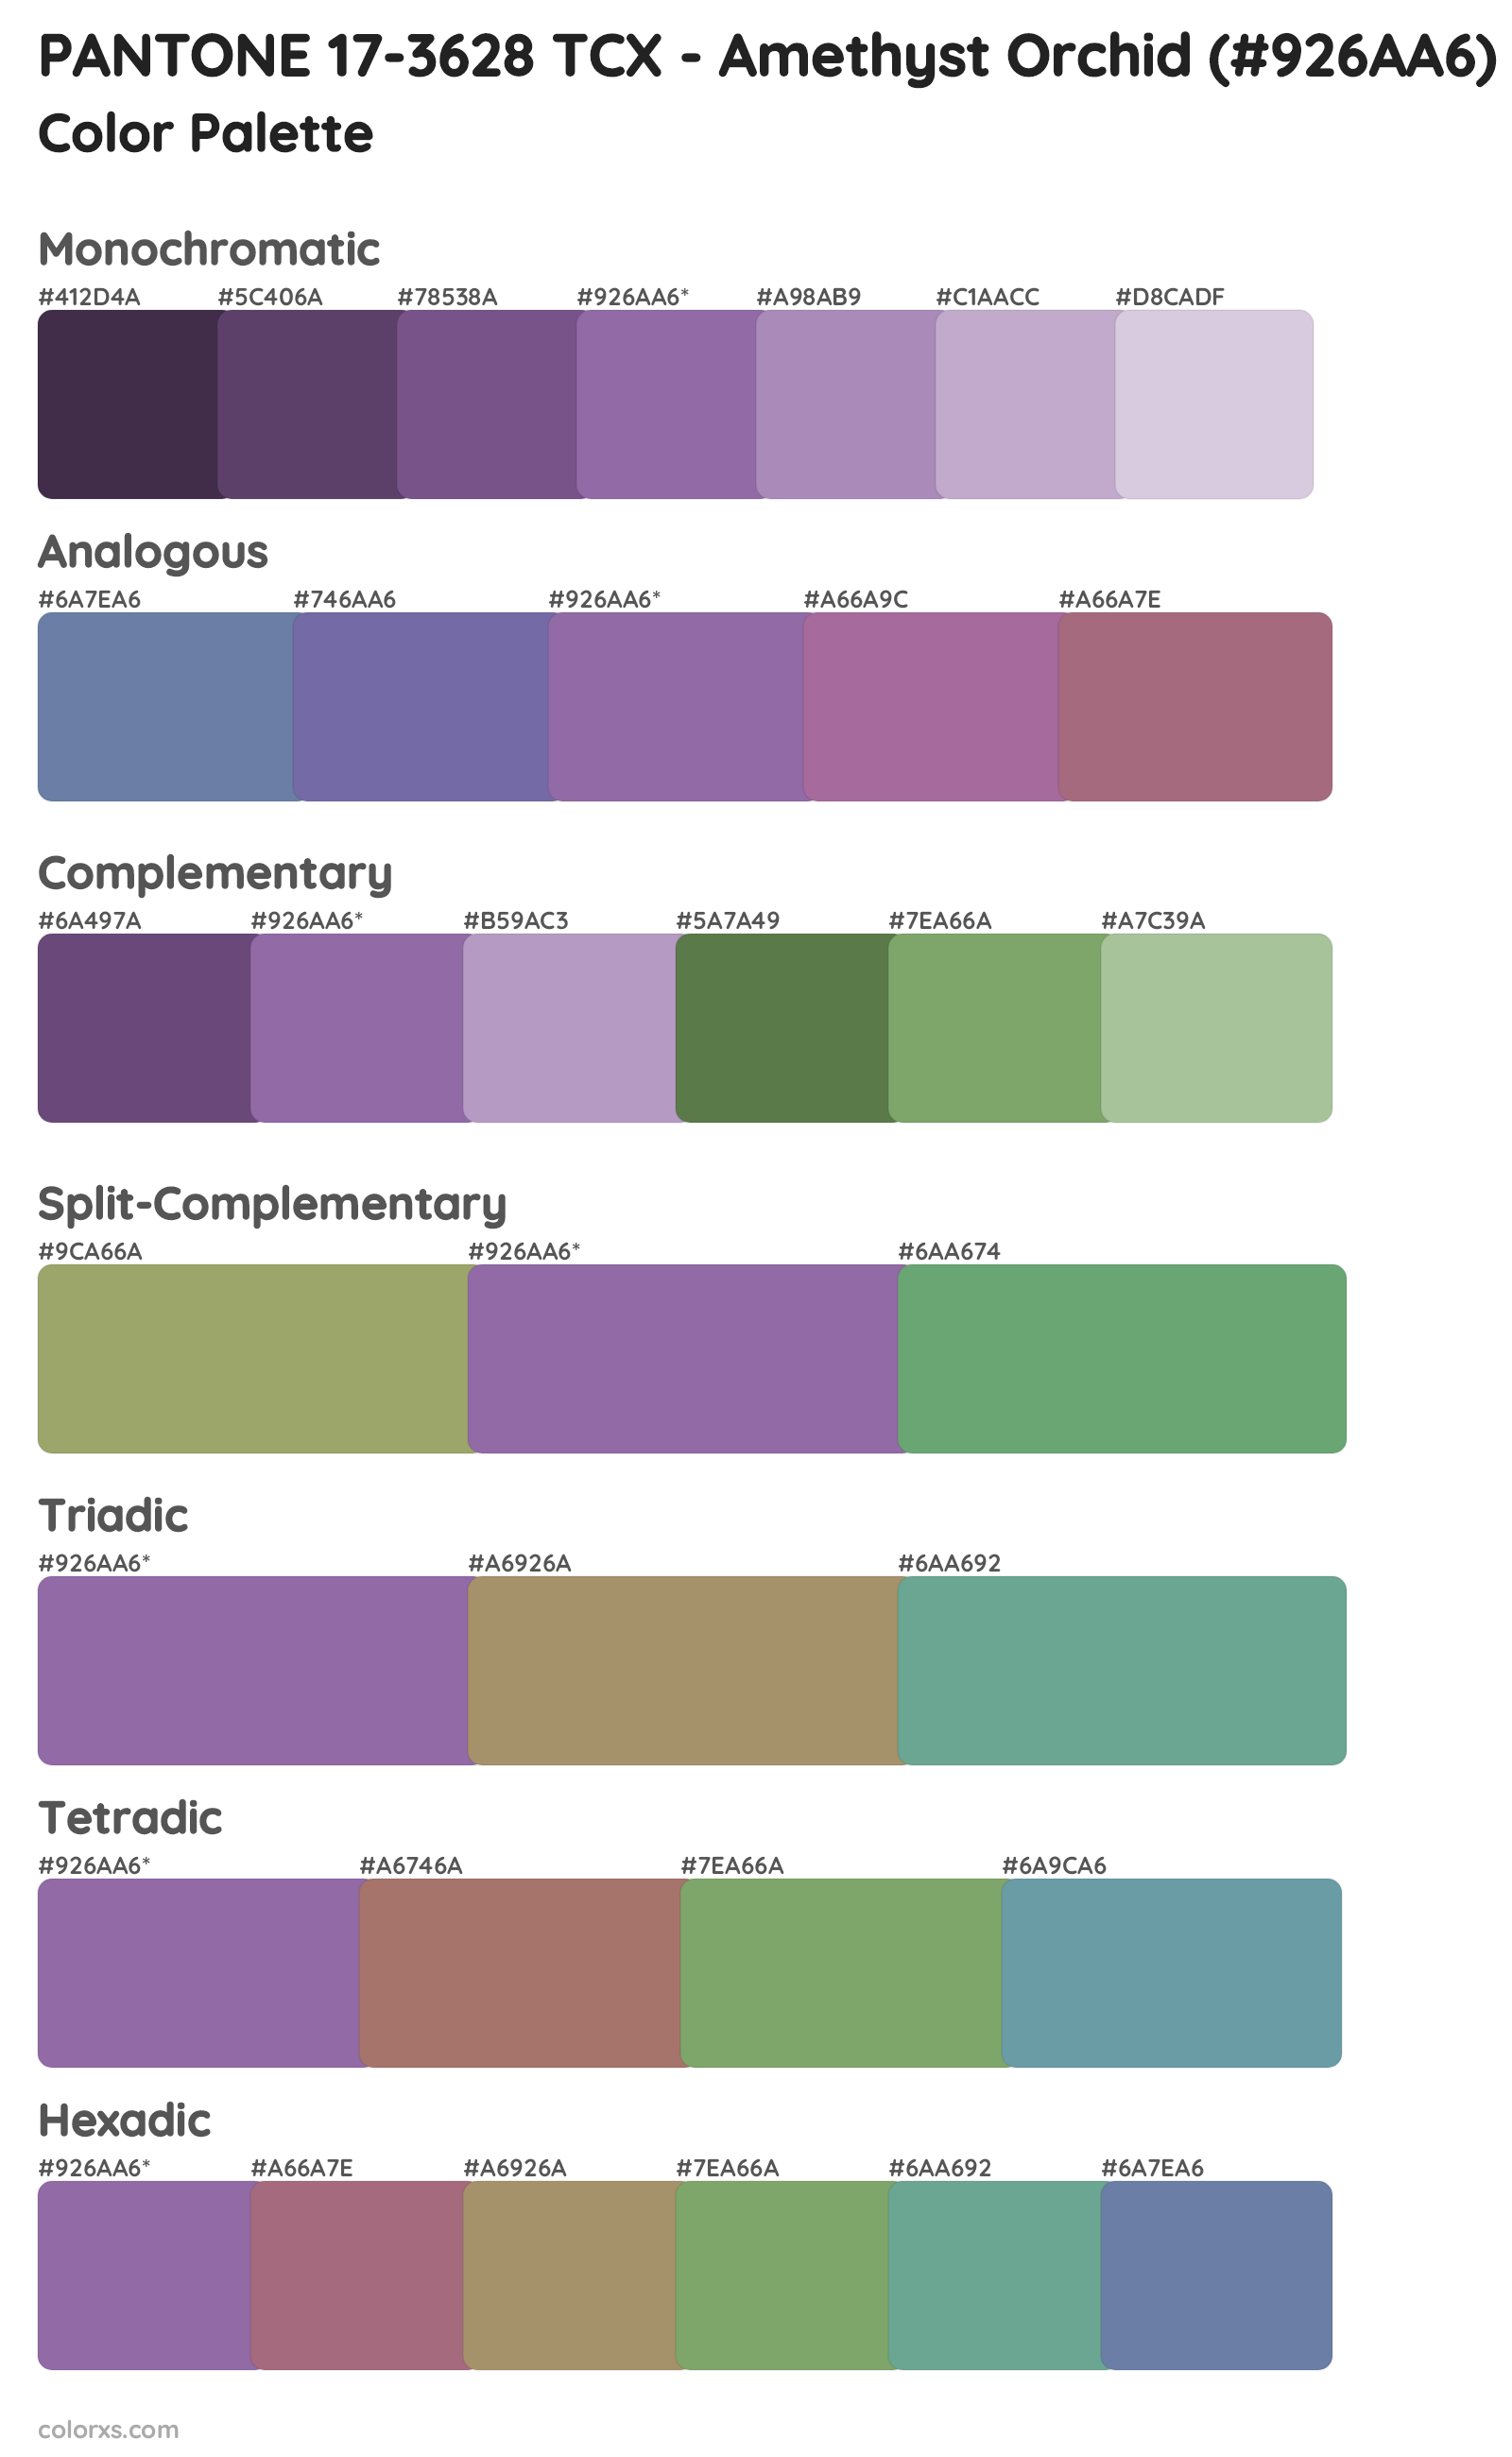 PANTONE 17-3628 TCX - Amethyst Orchid Color Scheme Palettes